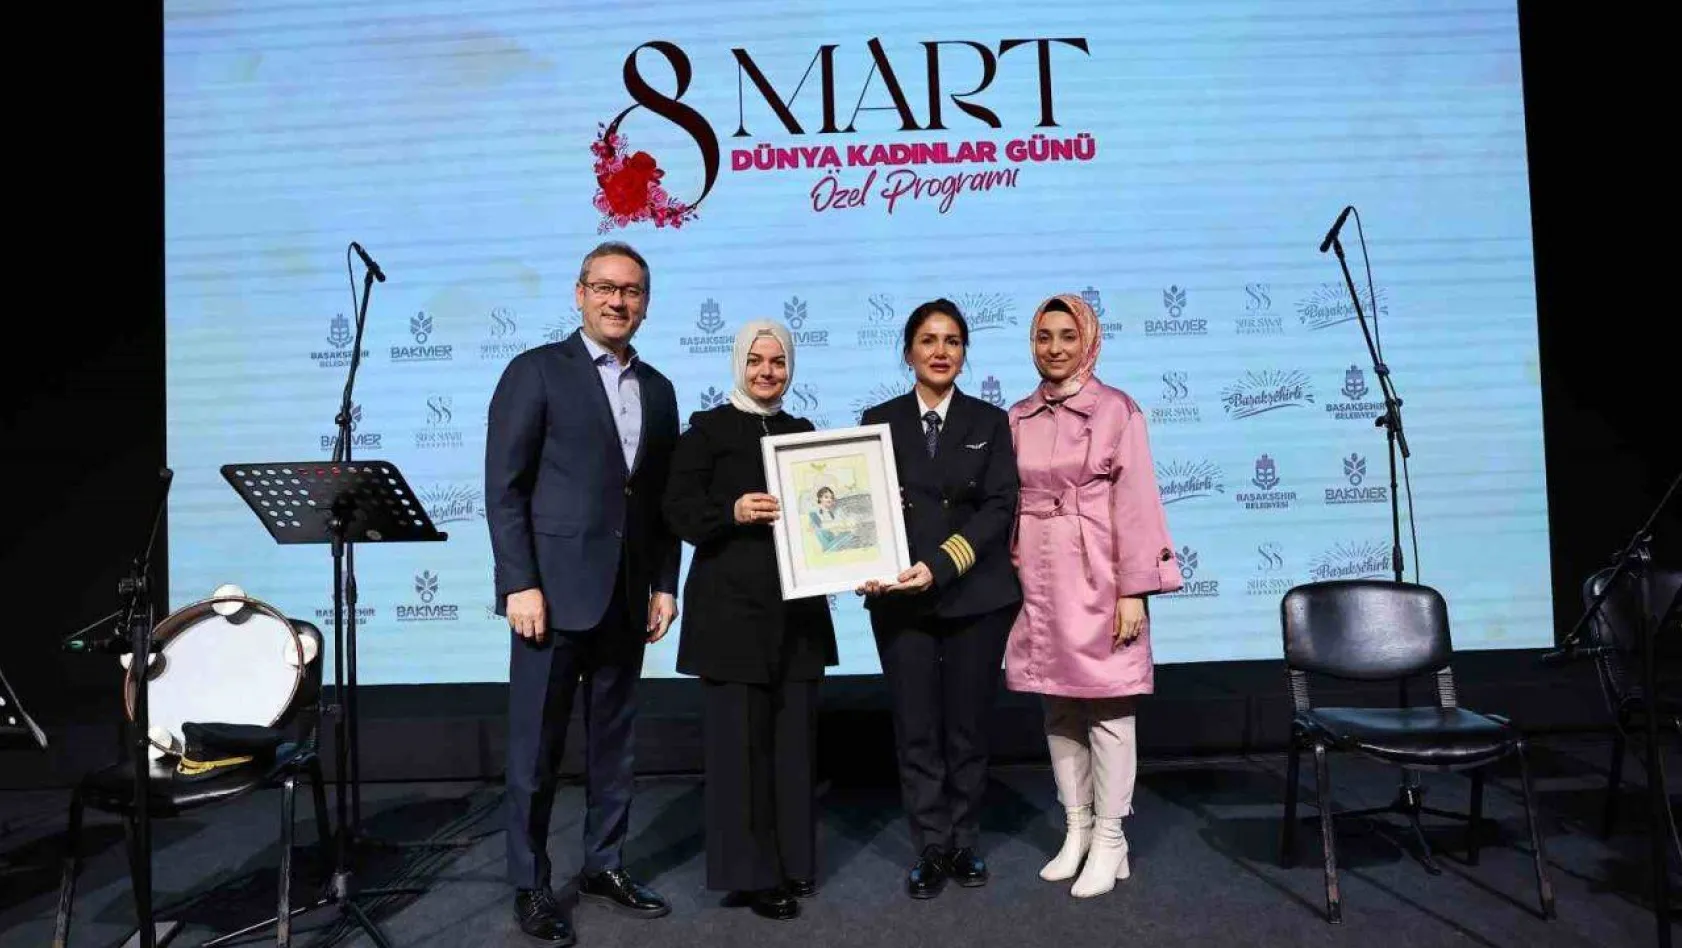 Başakşehir Belediye Başkanı Kartoğlu: 'Her başarılı erkeğin arkasında bir kadın vardır'